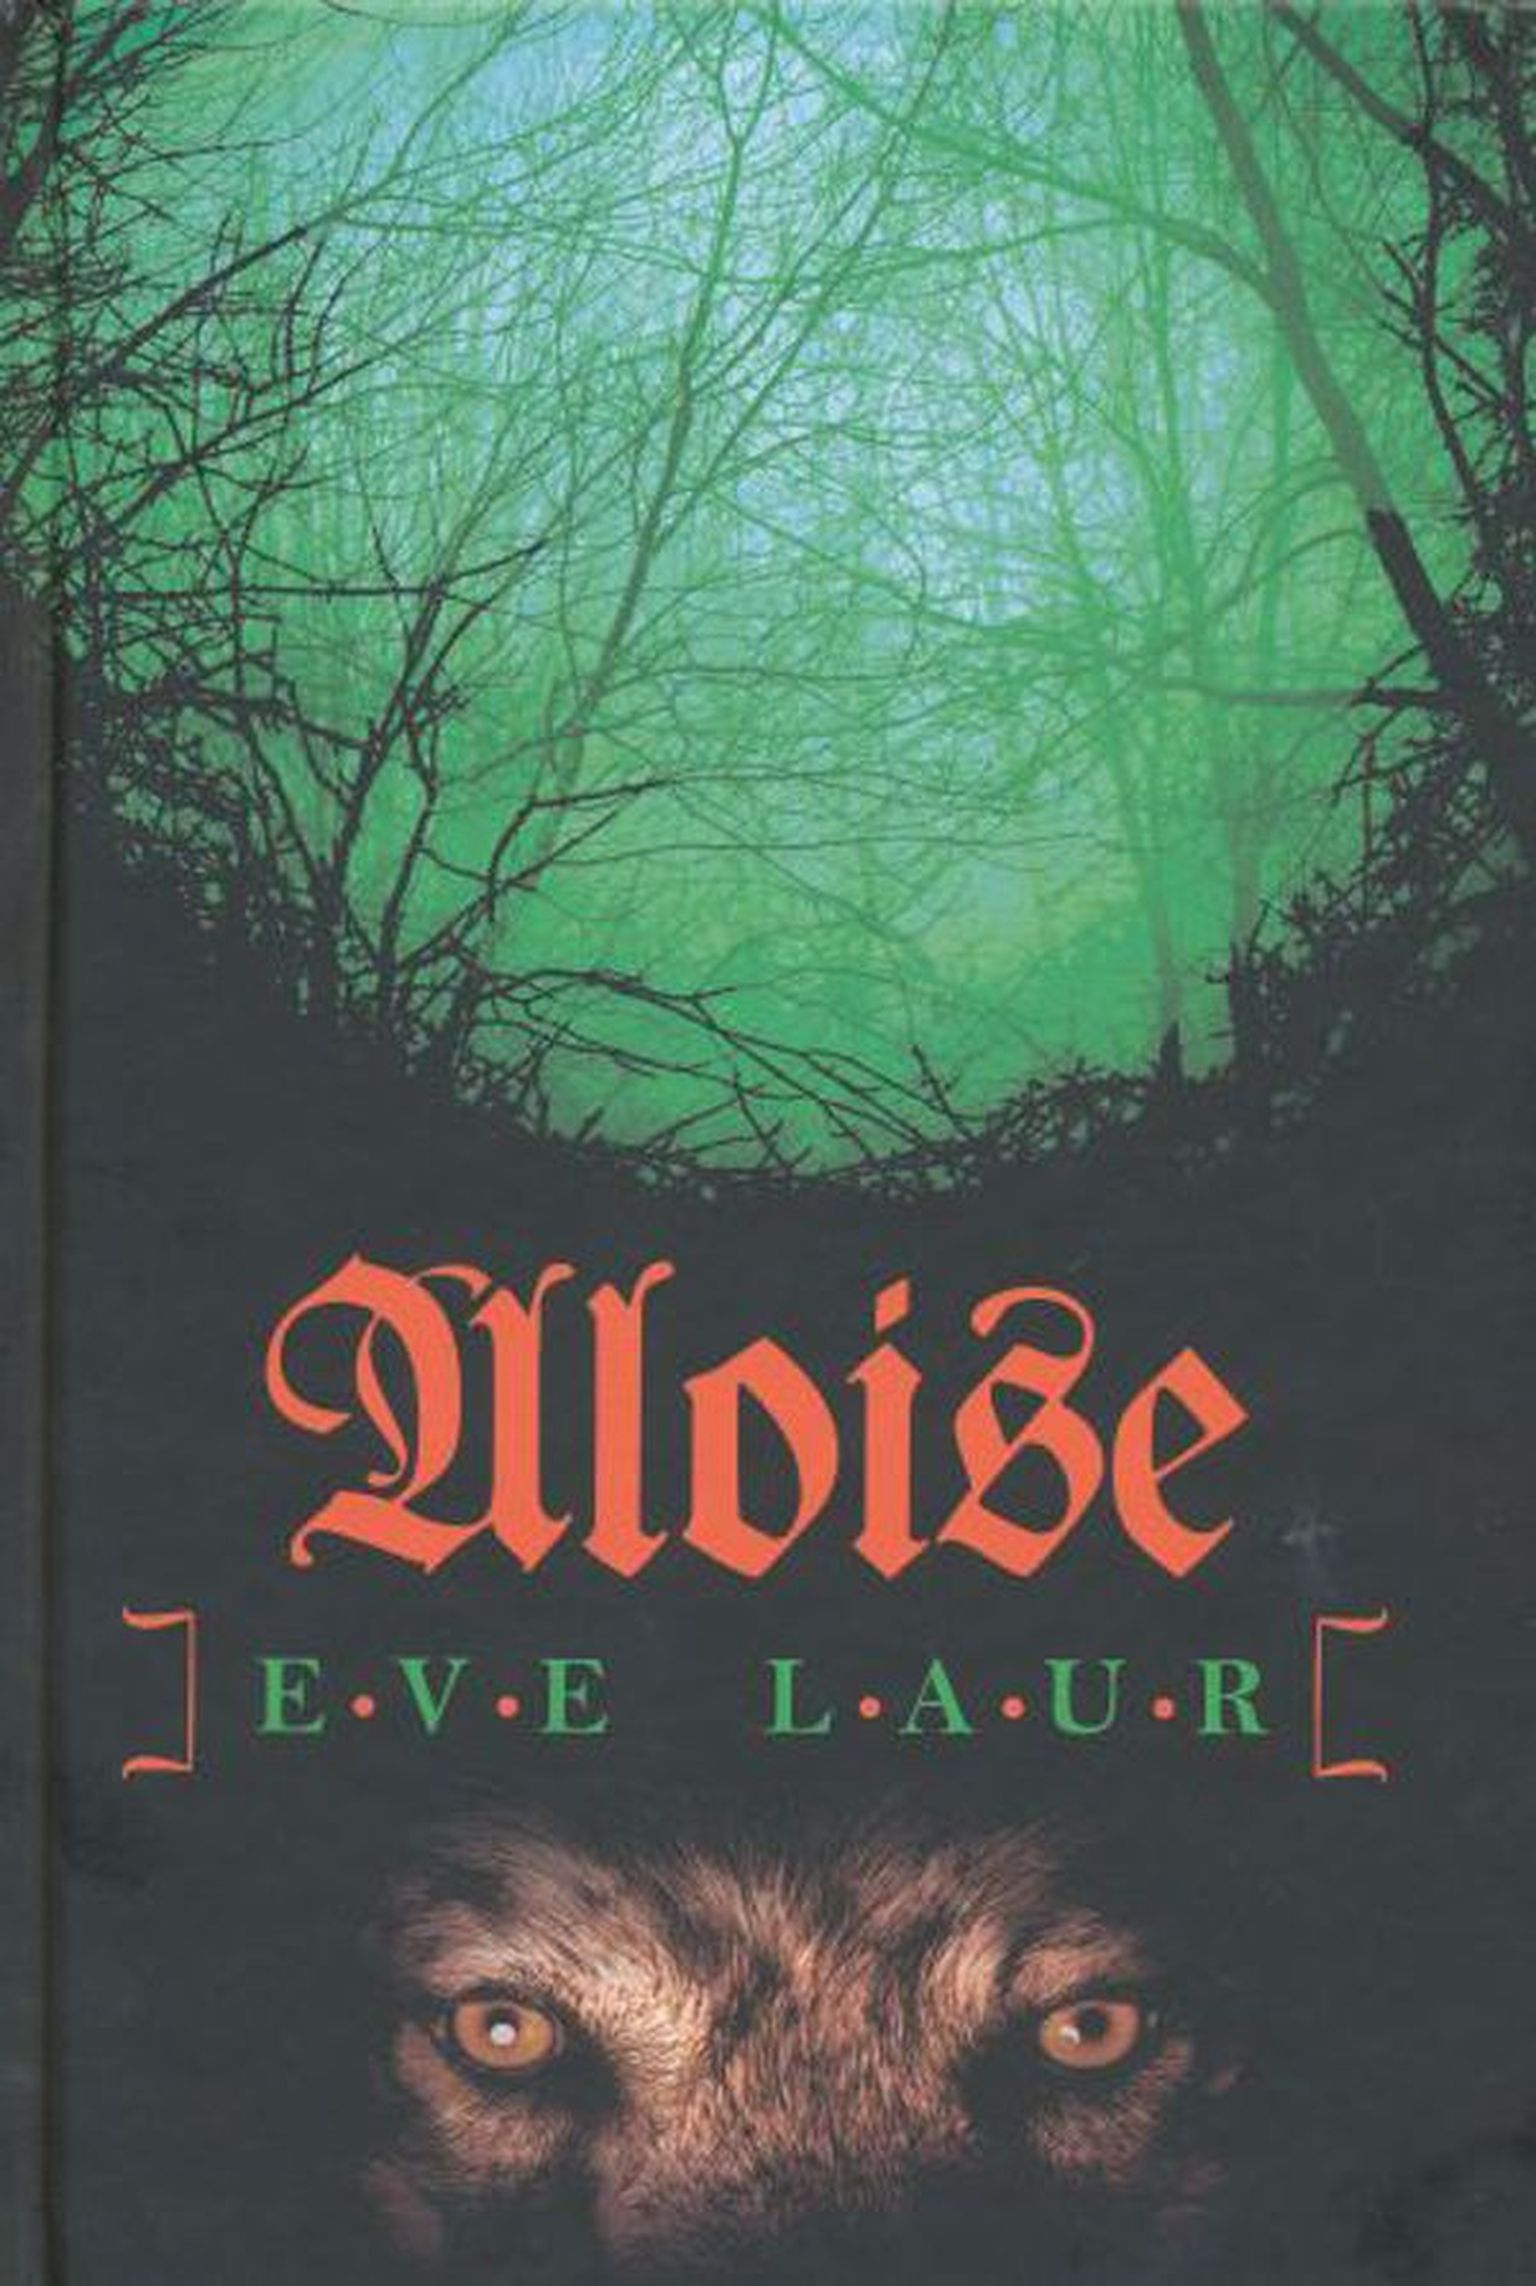 Raamat
Eve Laur «Aloise»
Tänapäev, 2011
358 lk